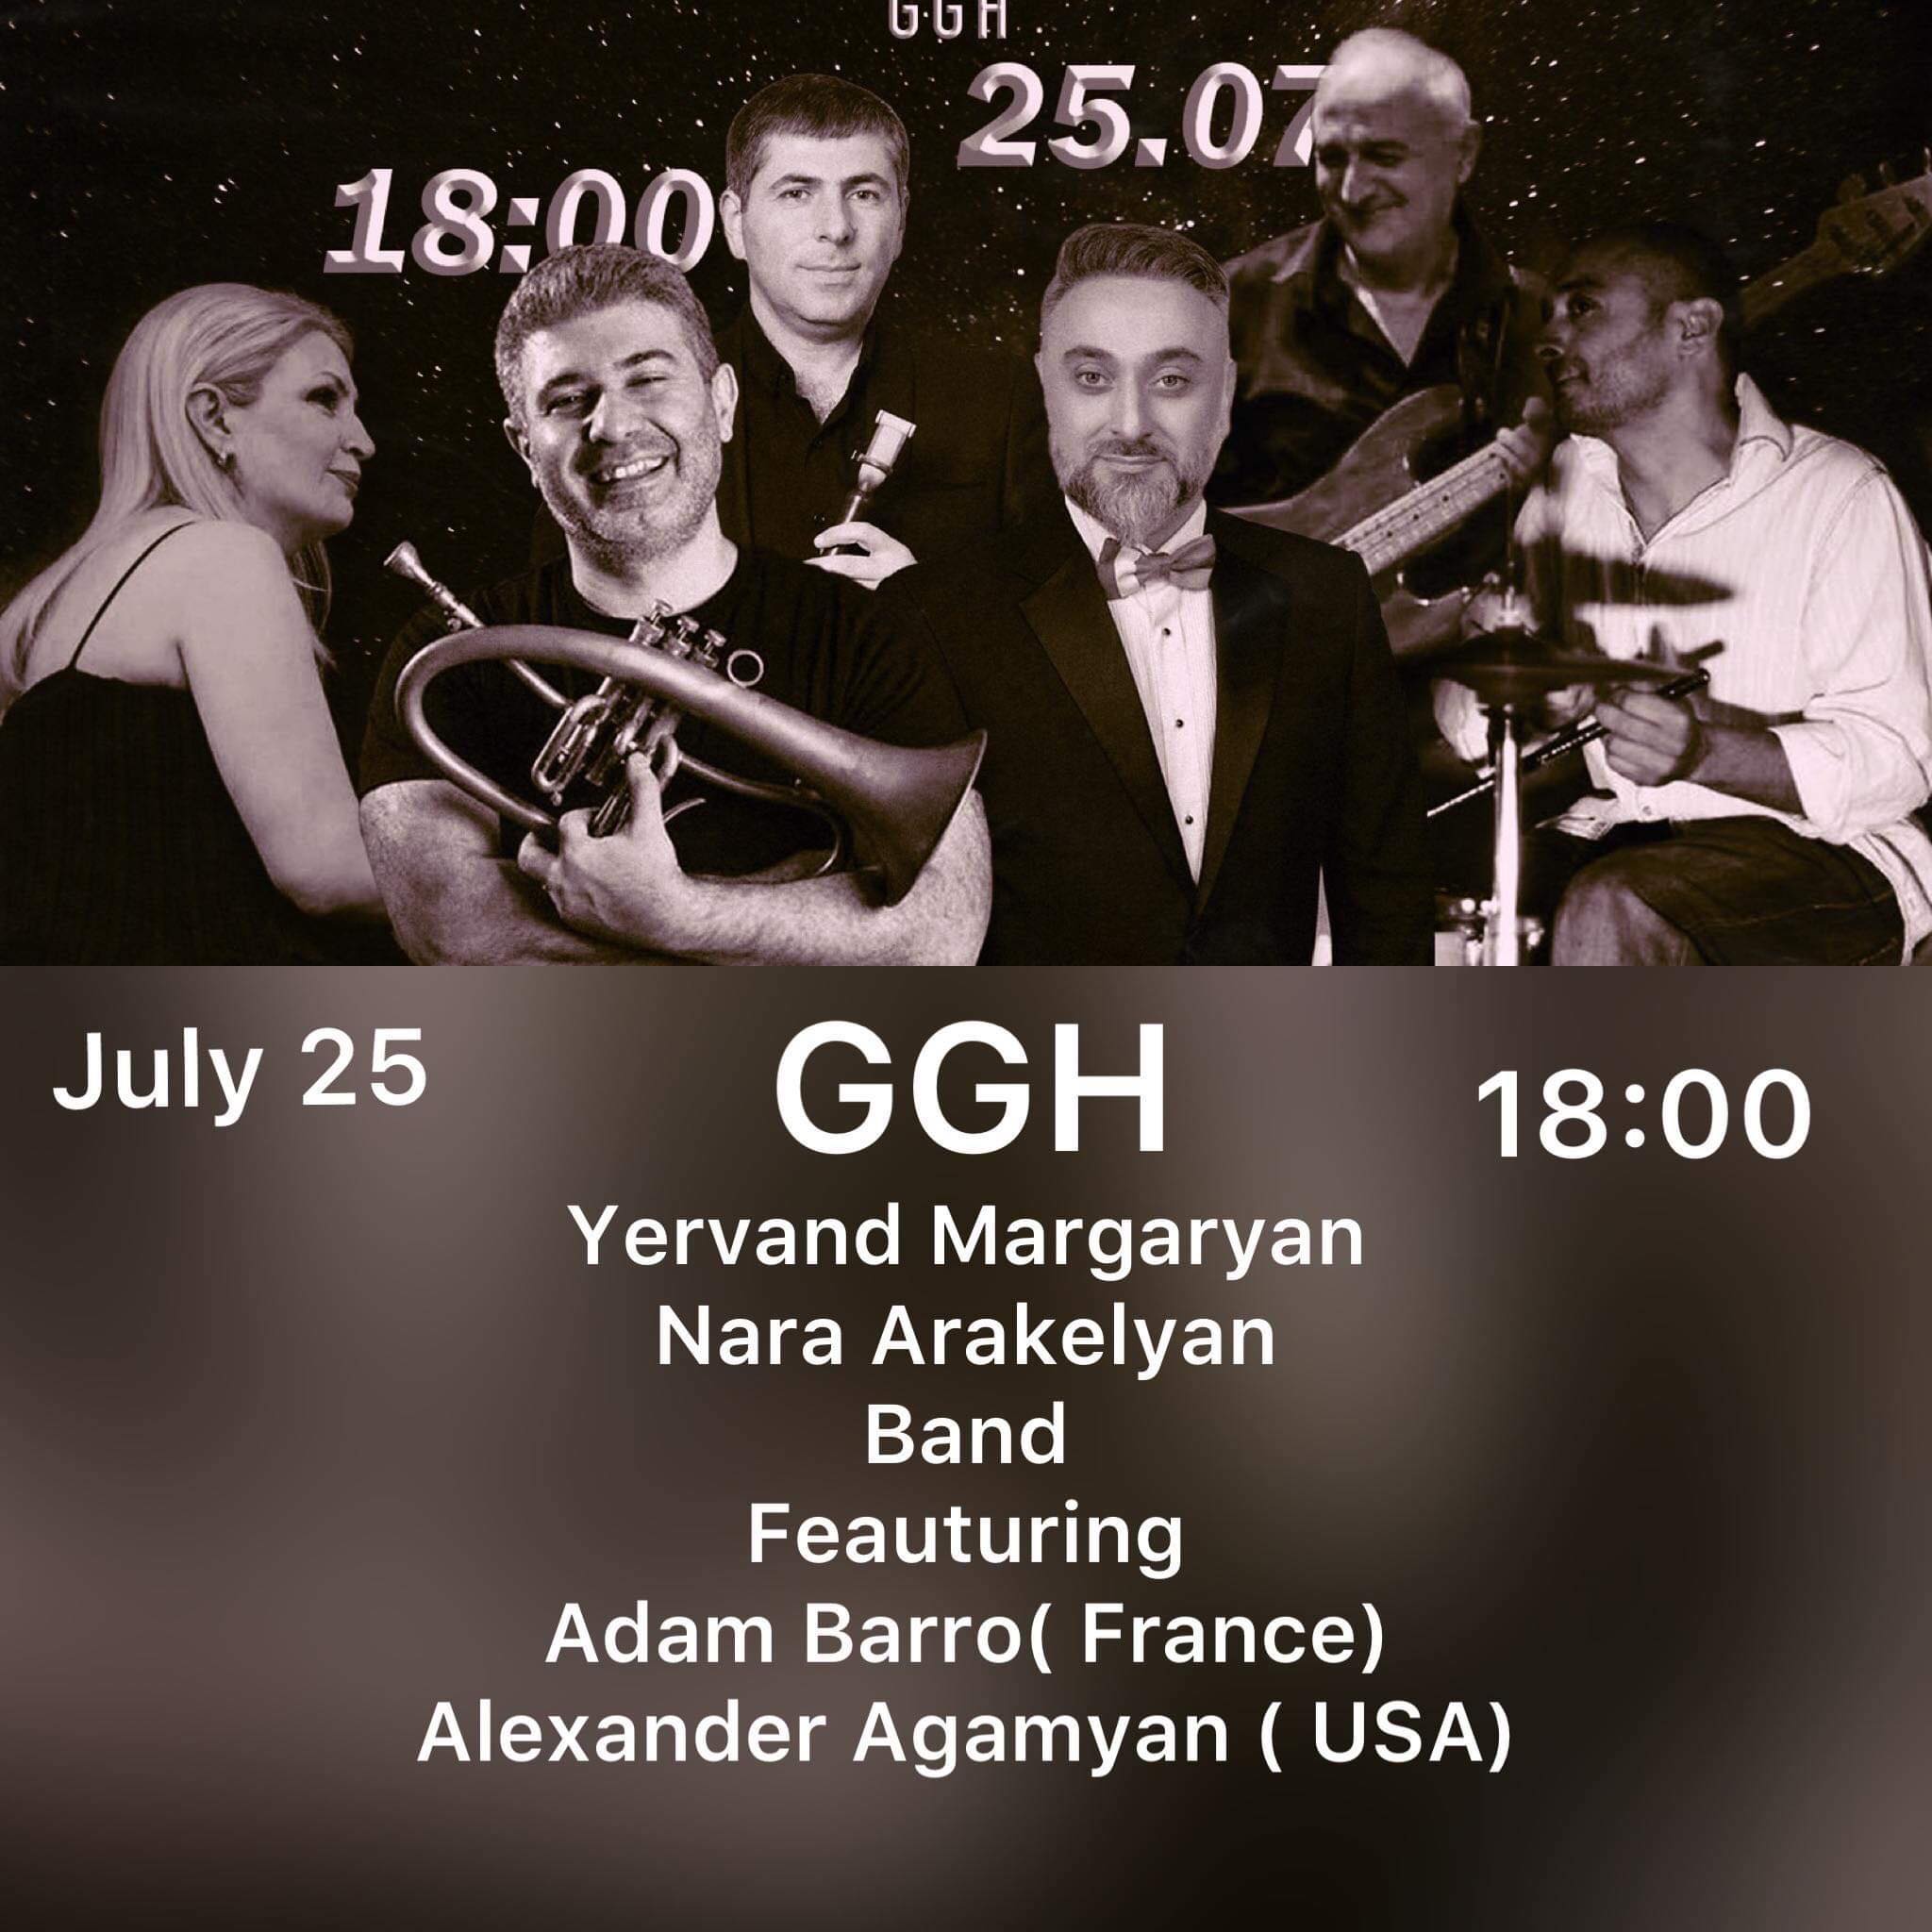 Երբ հայ դասական երաժշտությունը խառնվում է ջազին. համերգային երեկո՝ Գյումրվա GGH-ում